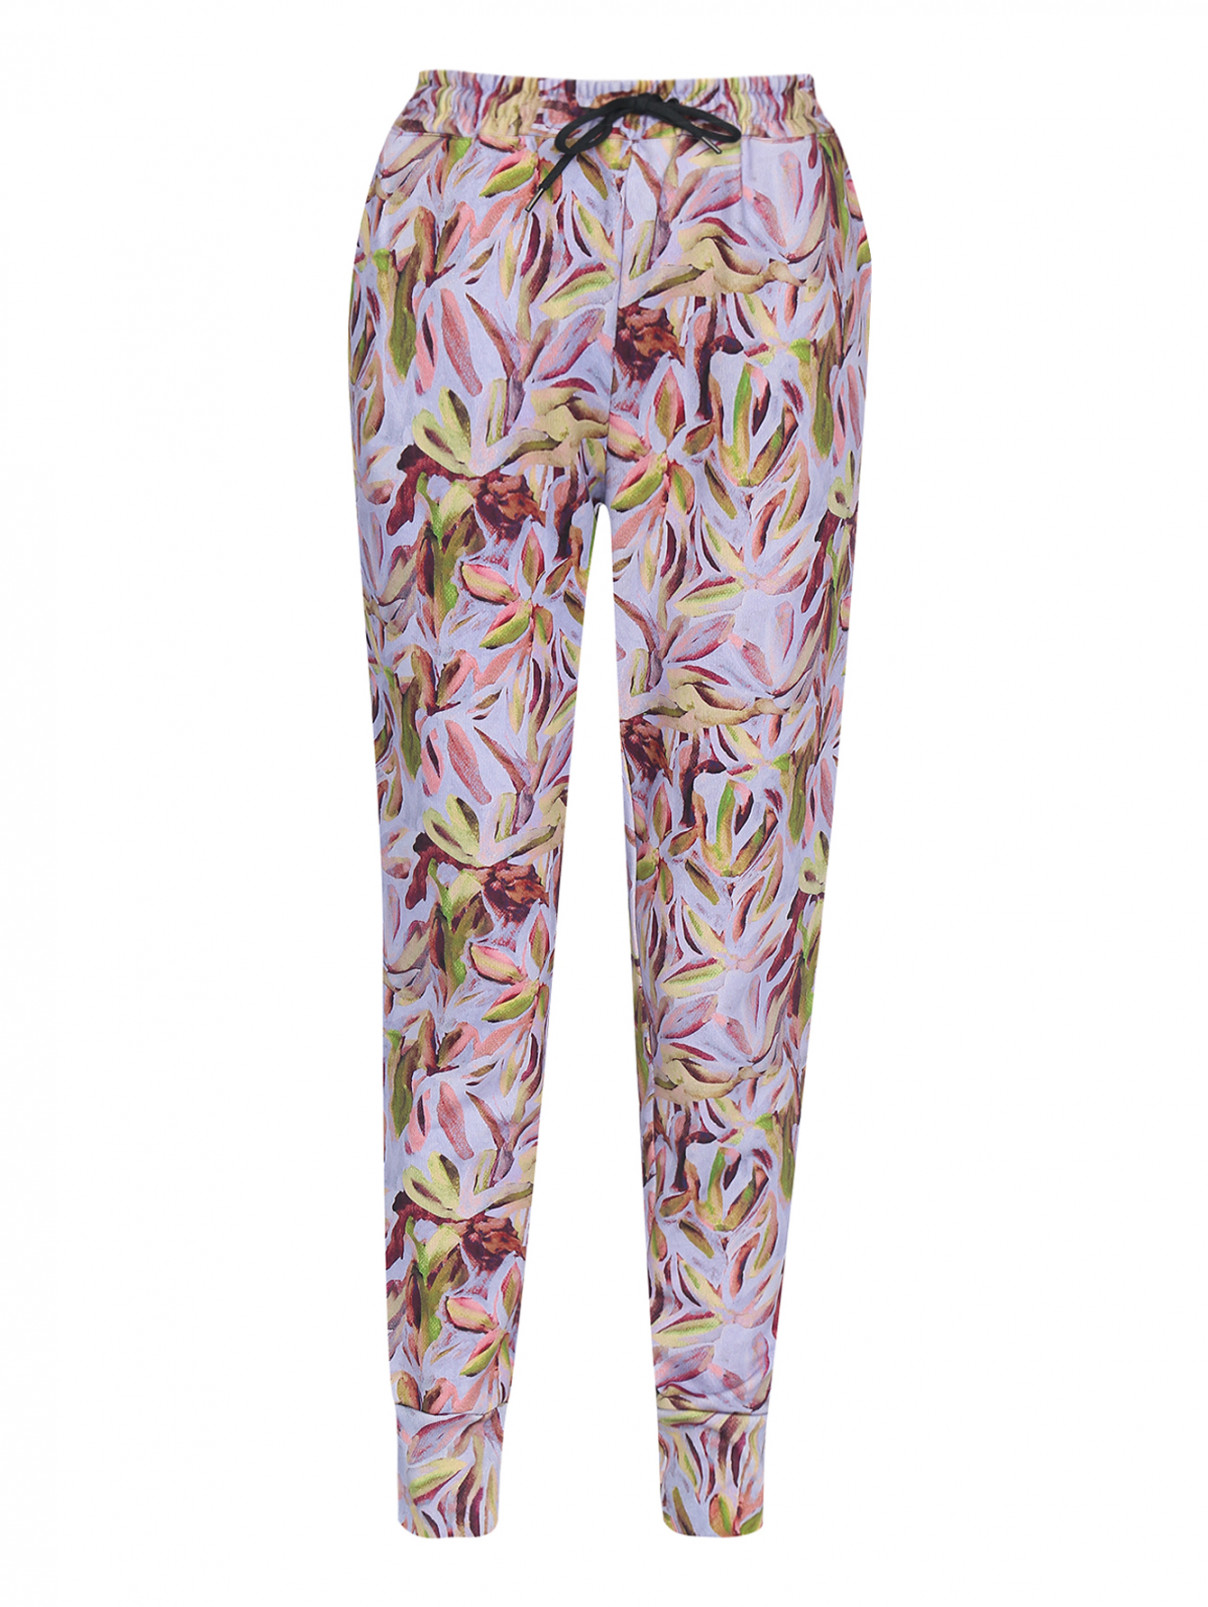 Трикотажные брюки с узором Paul Smith  –  Общий вид  – Цвет:  Мультиколор